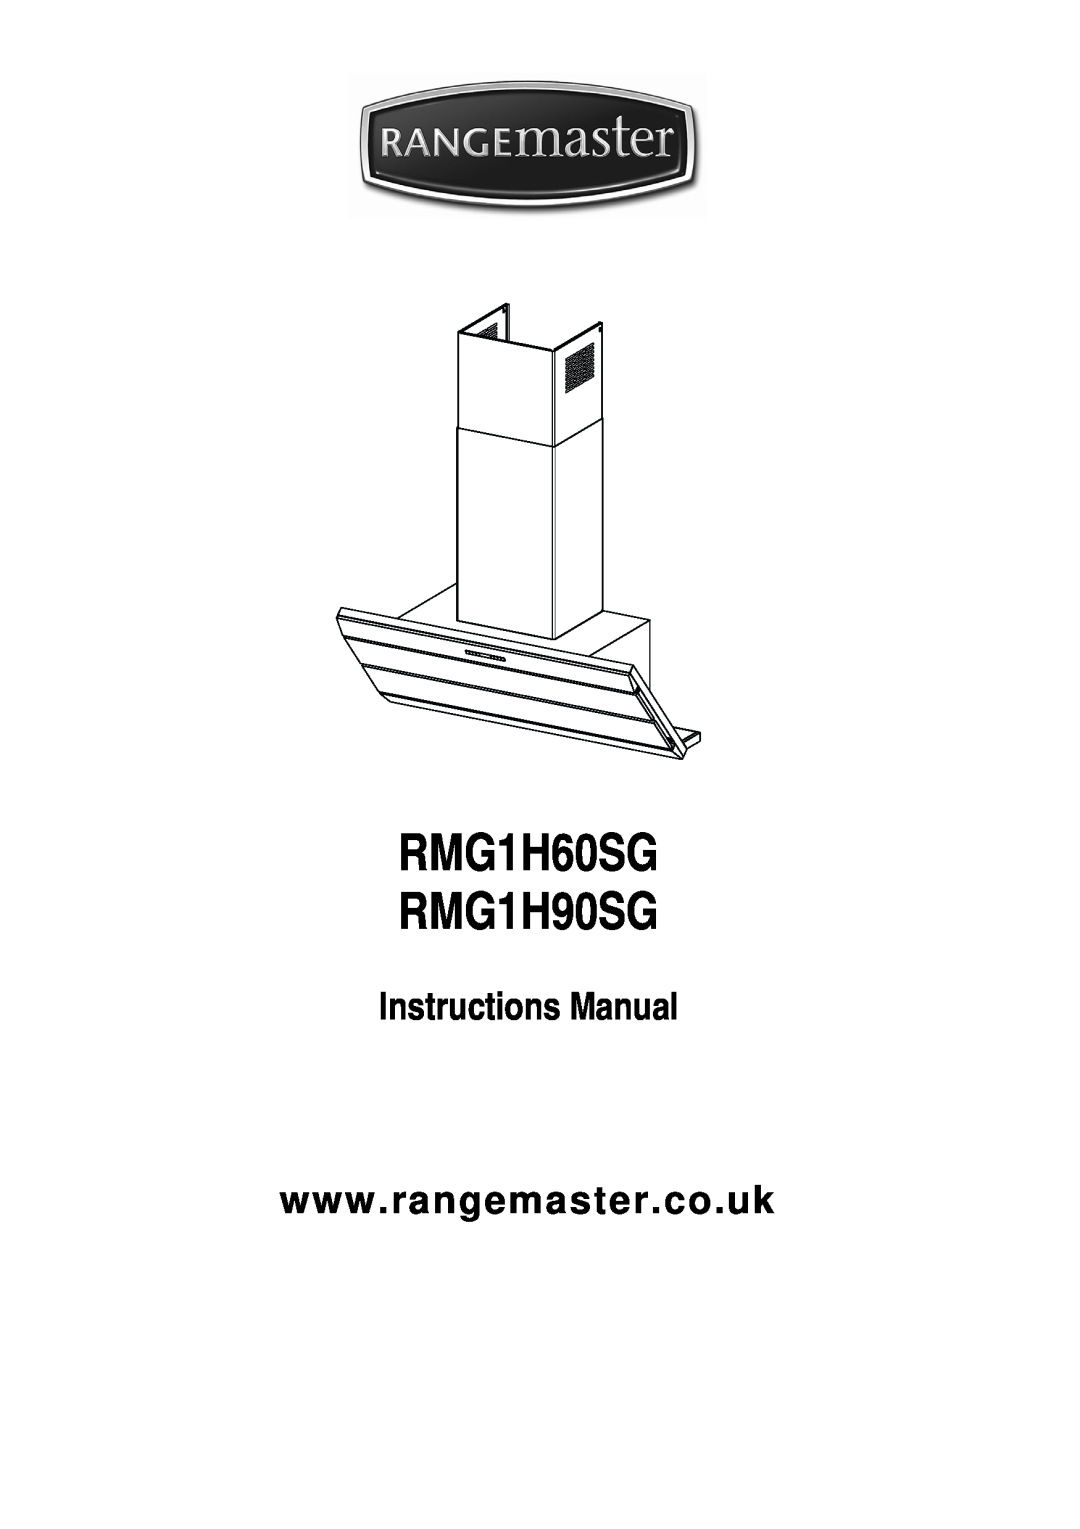 Rangemaster RMG1H60SG manual RMG1H90SG 